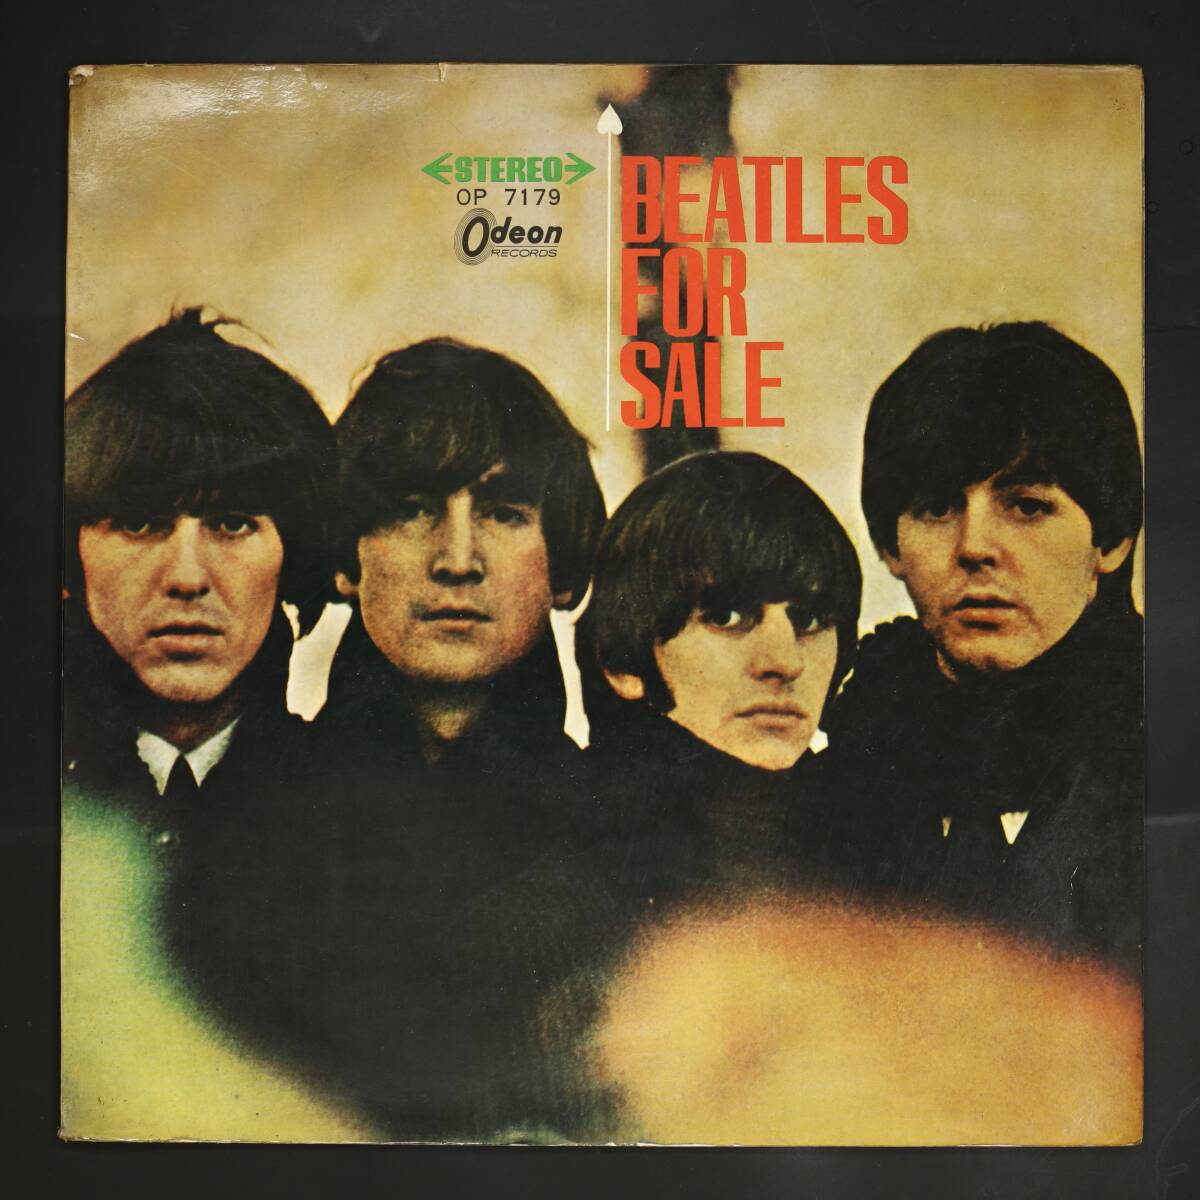 【日盤LP】BEATLES/ビートルズ '65 FOR SALE(並品,赤盤,OP-7179)の画像1